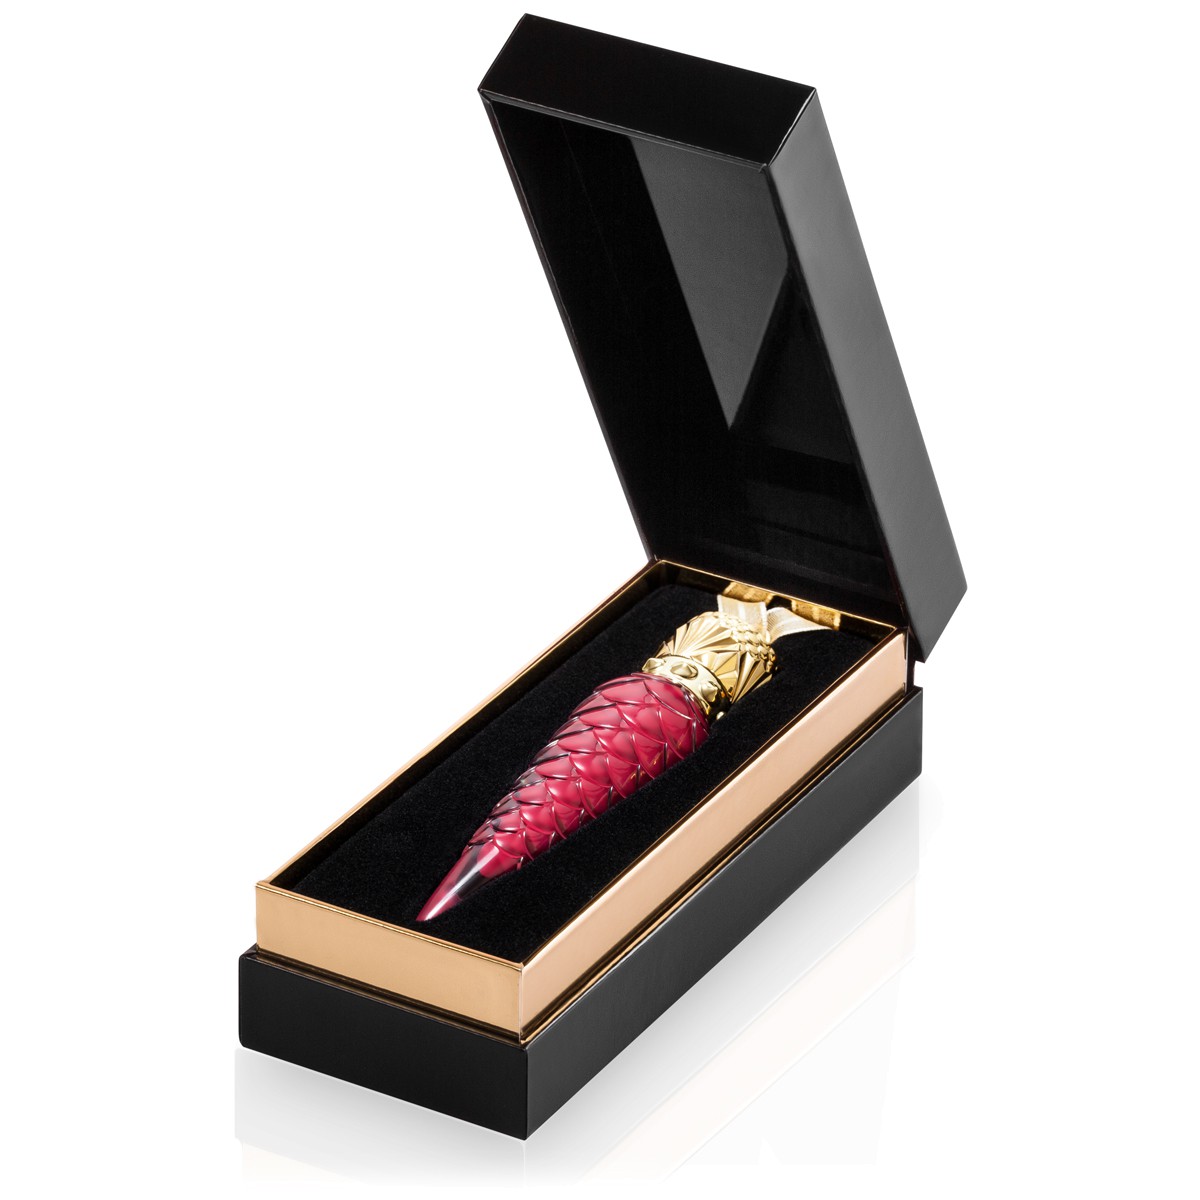 Christian Louboutin представил новую праздничную коллекцию лаков для губ (ФОТО)